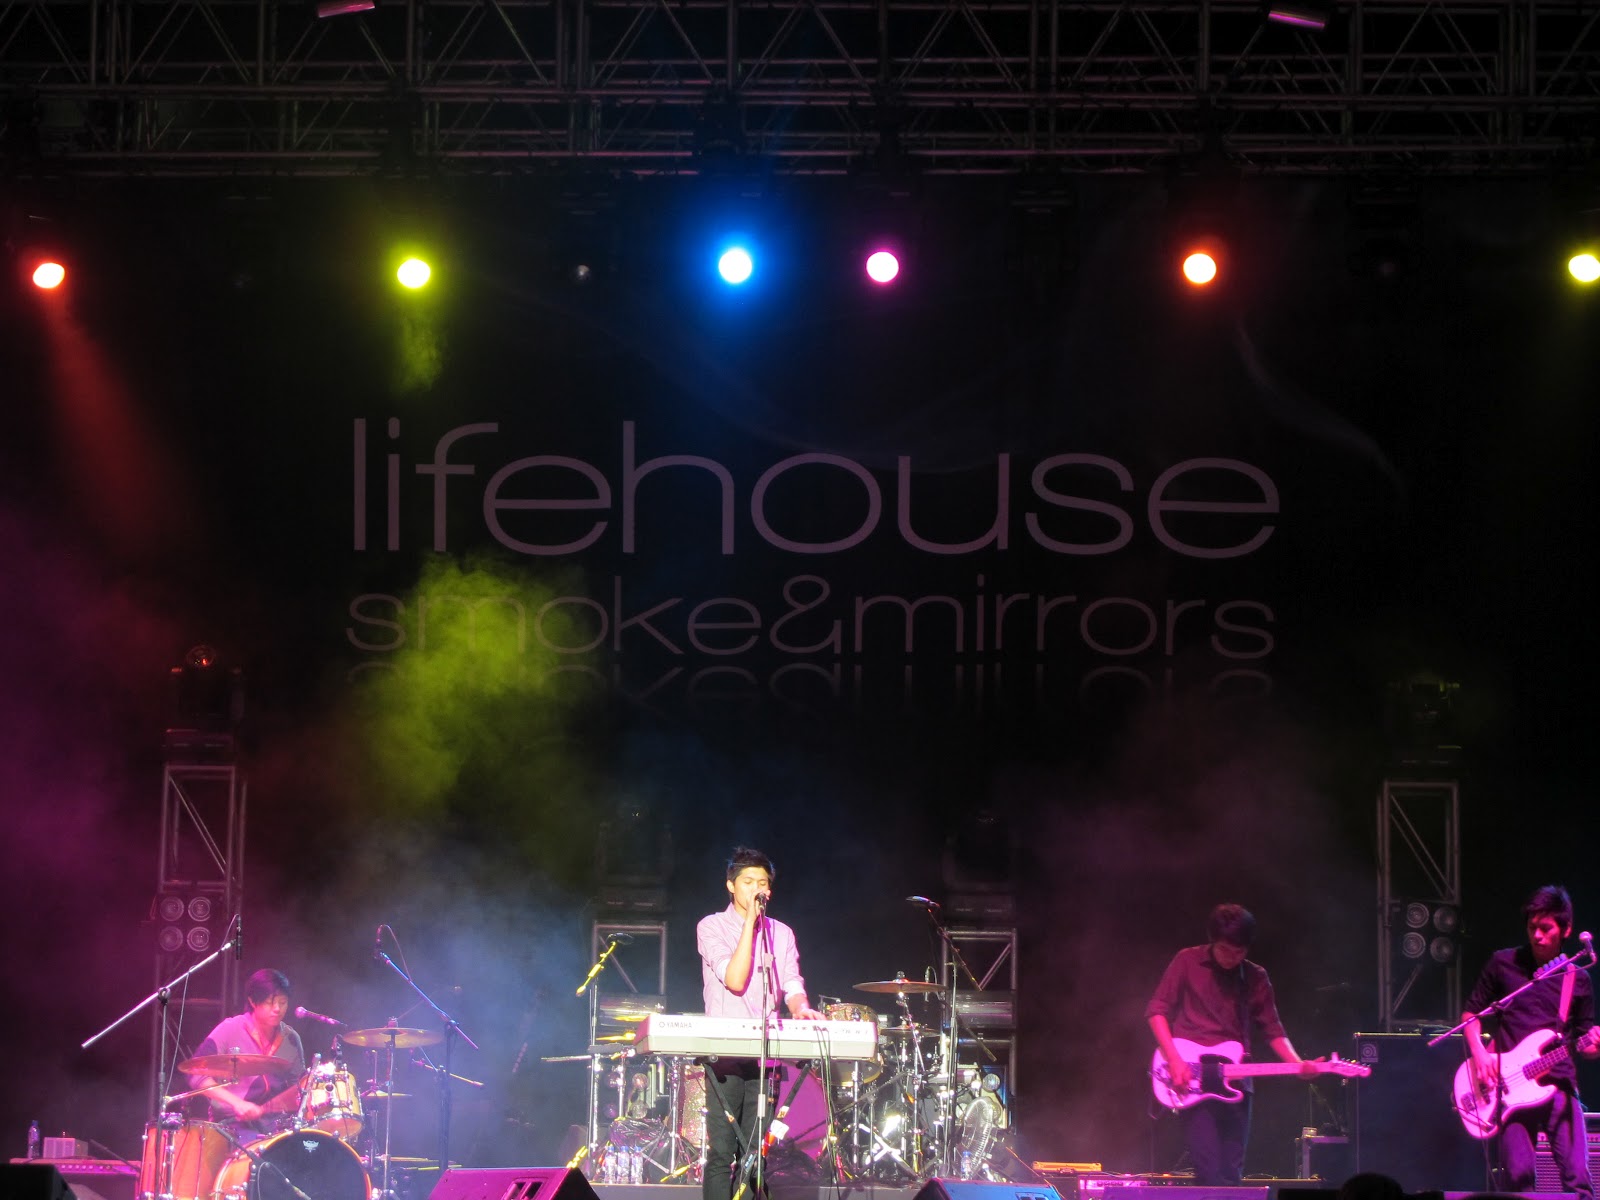 Lifehouse smoke